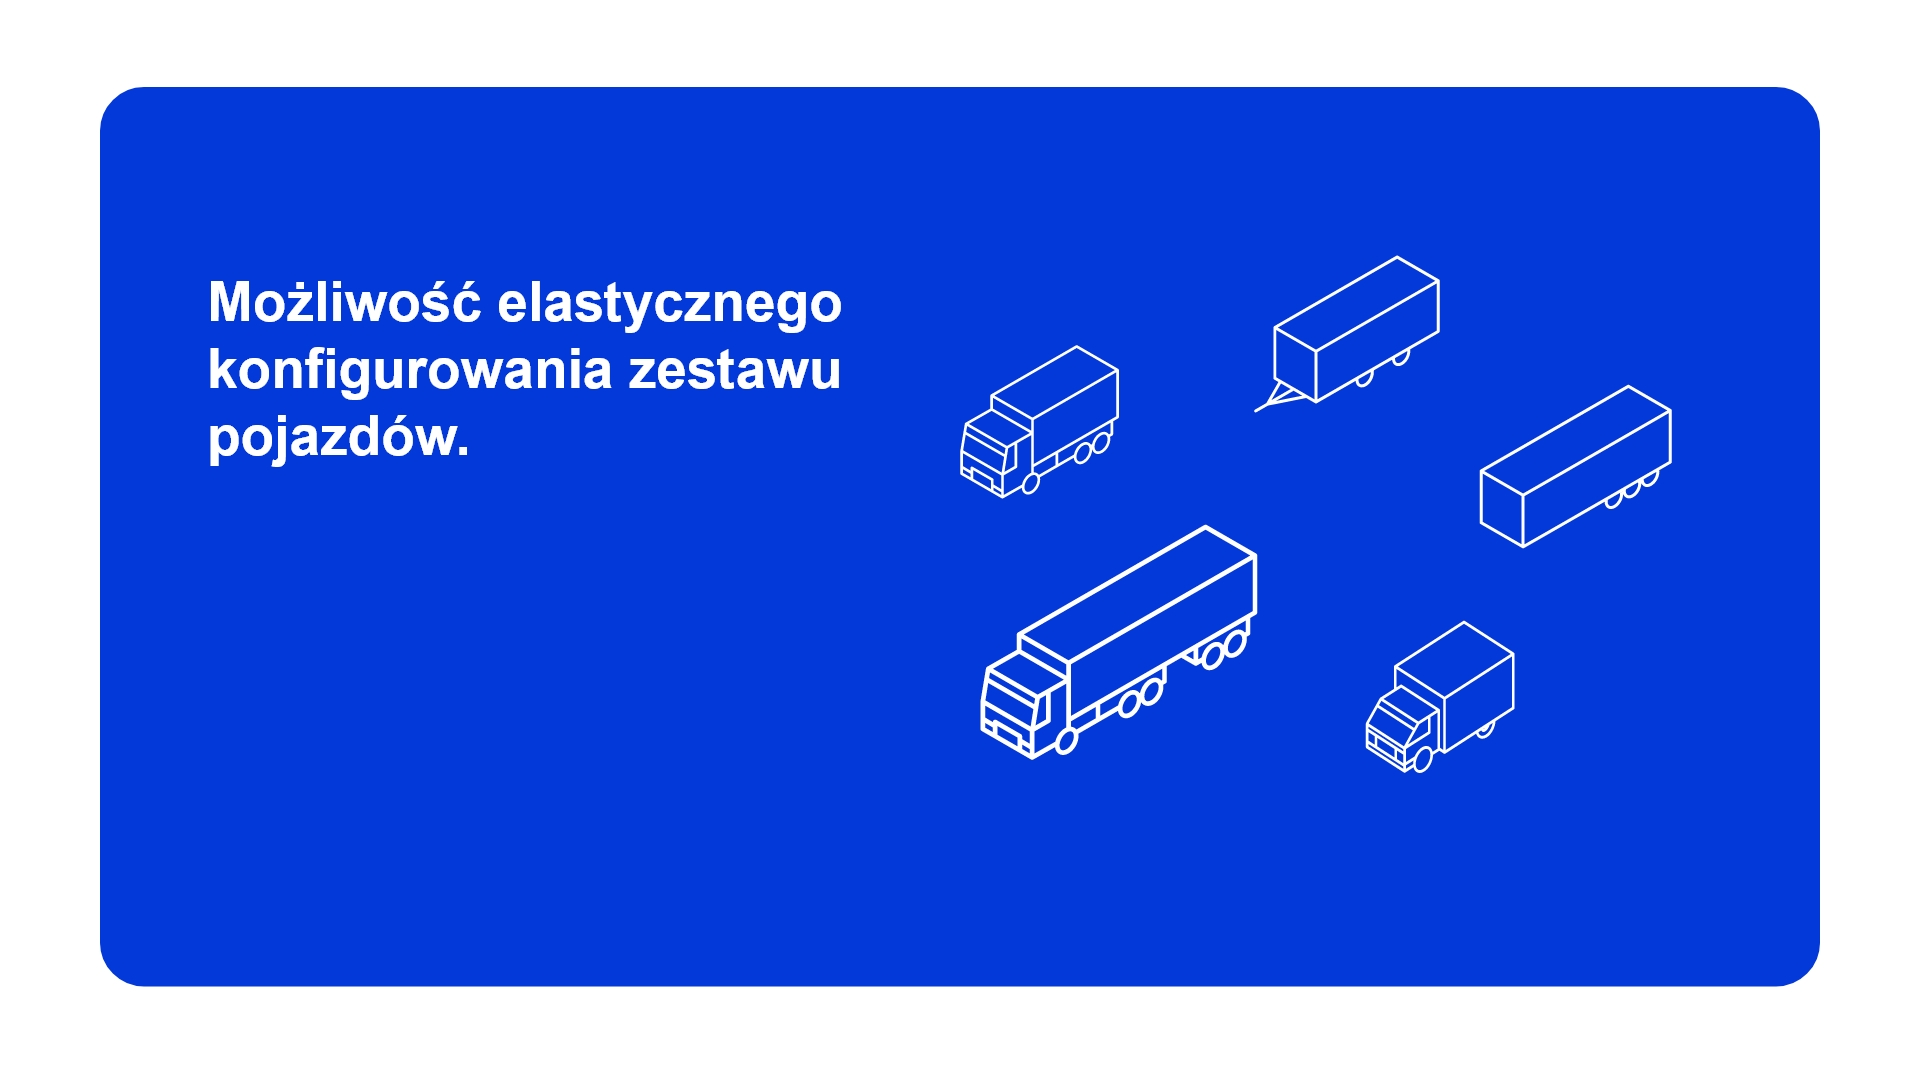 Omega Pilzno Rental - możliwość elastycznego konfigurowania zestawu pojazdów